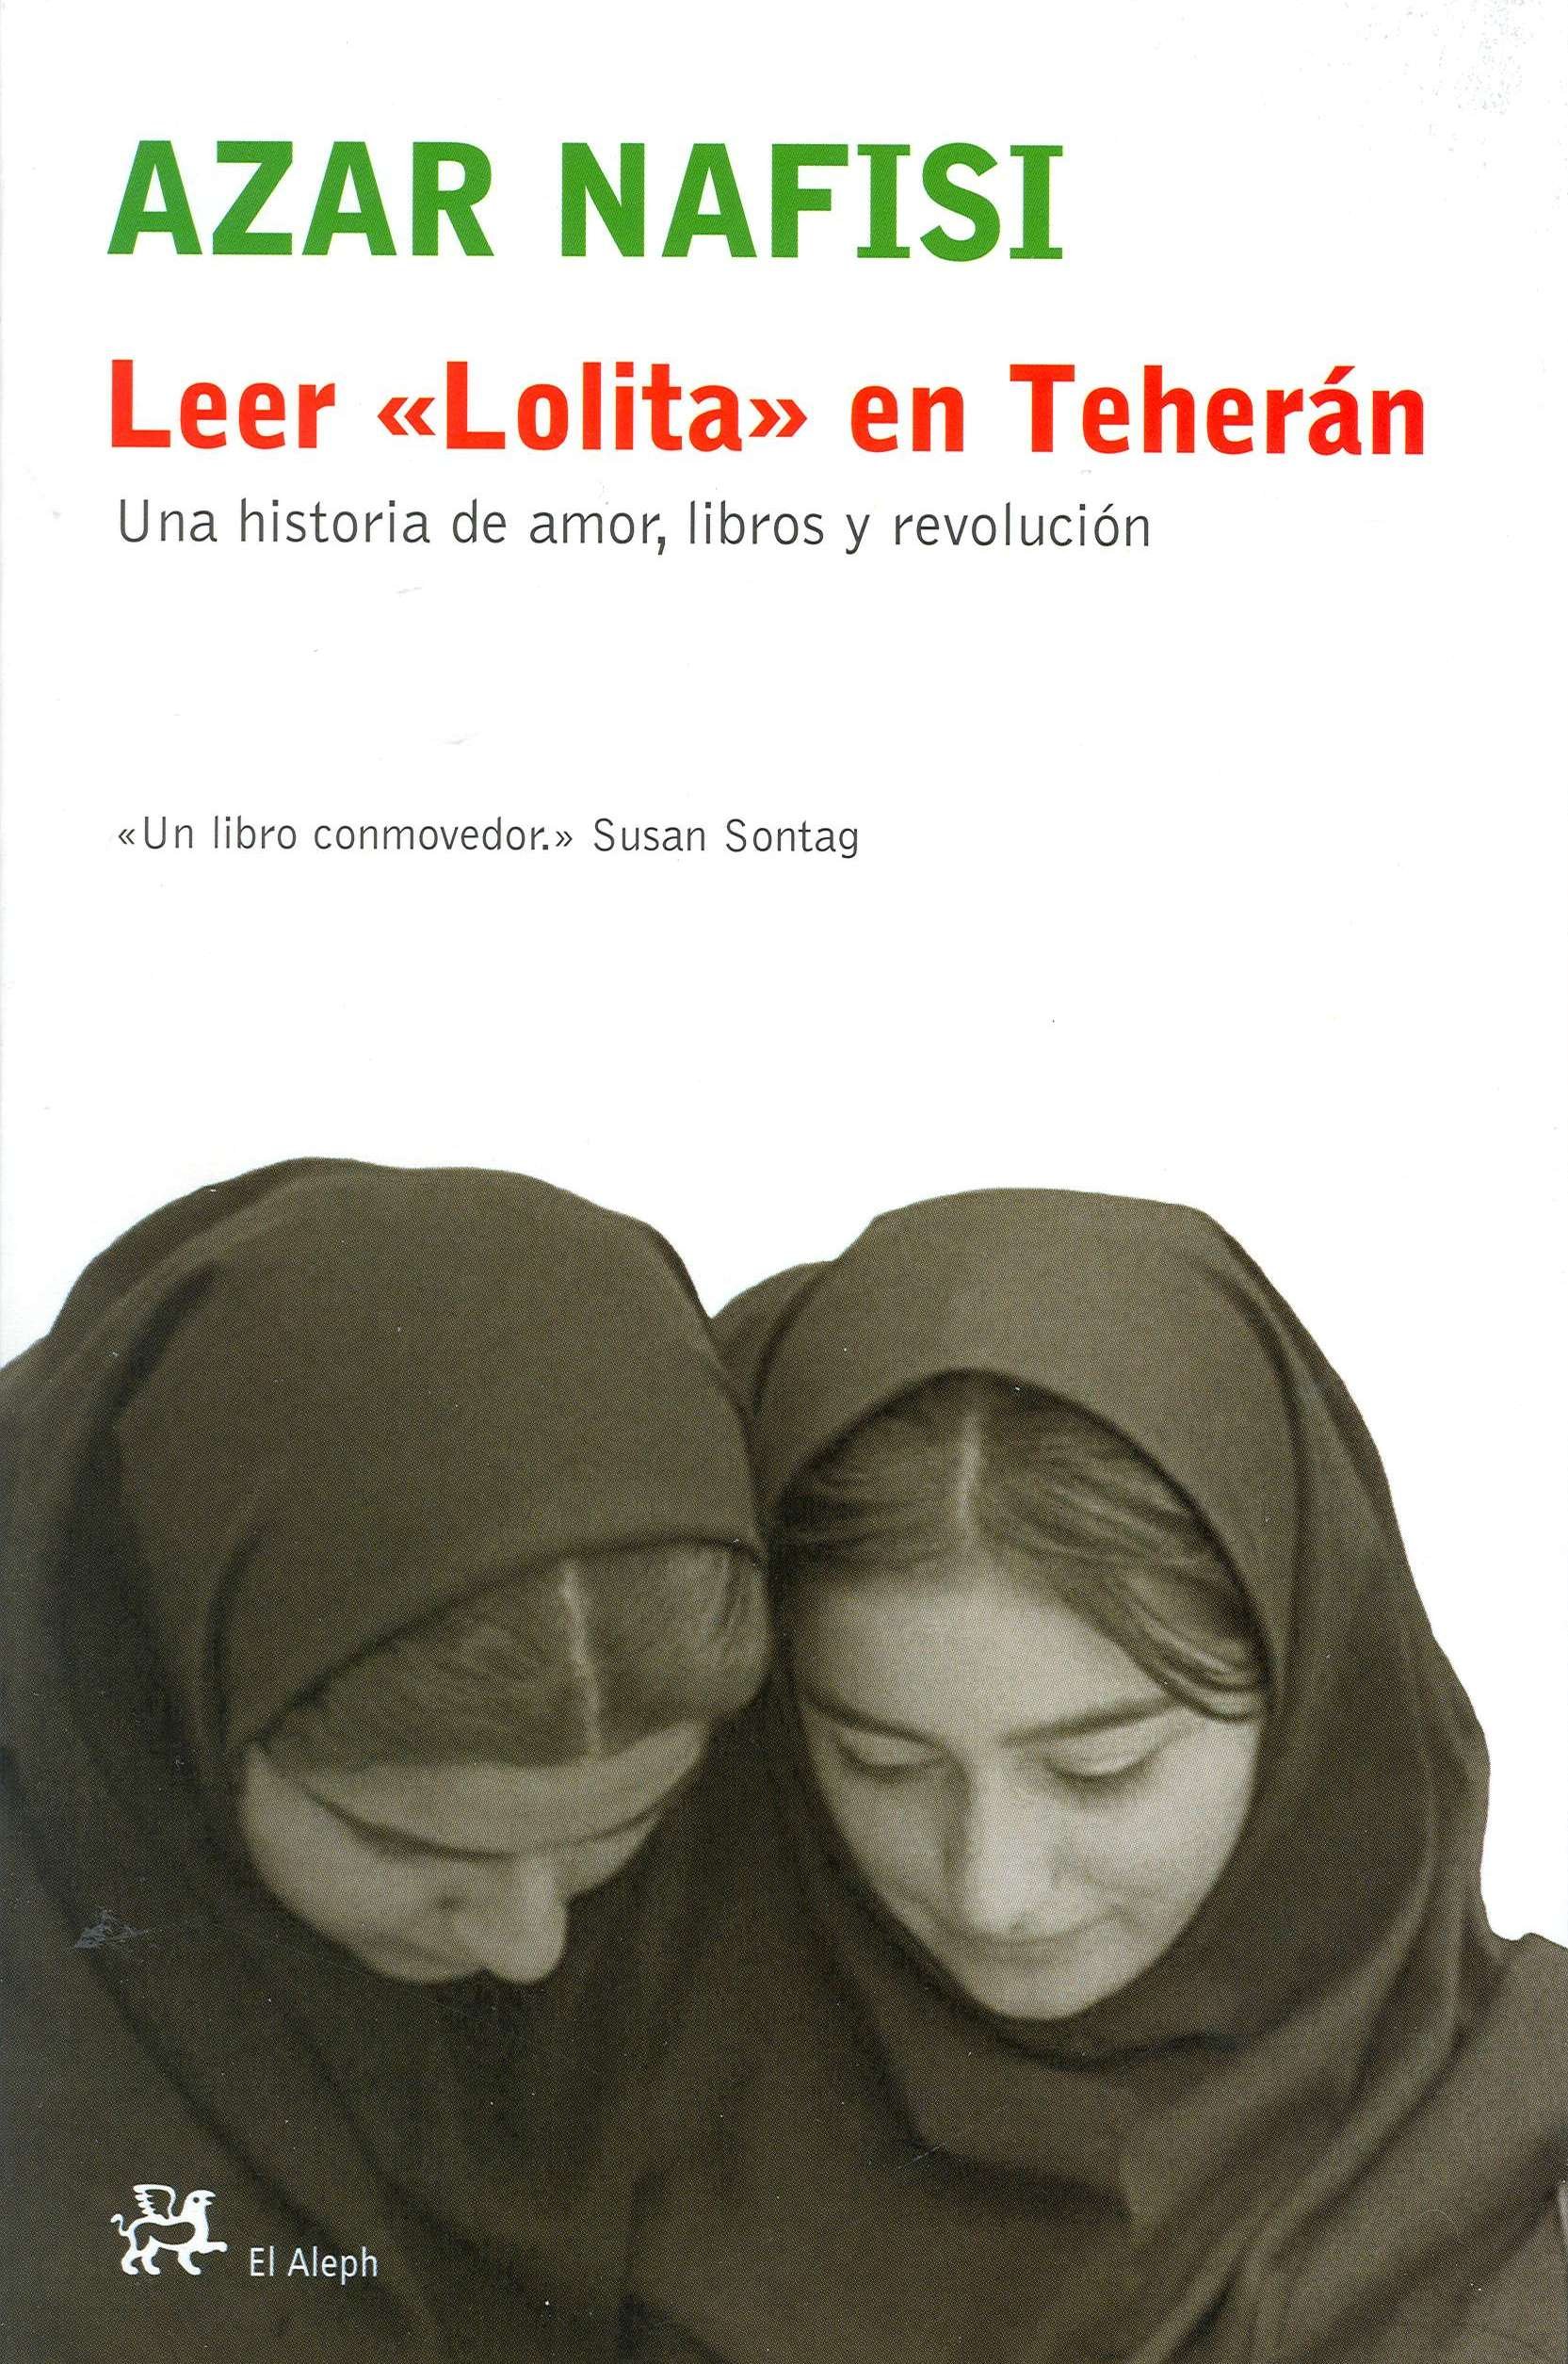 Leer a Lolita en Teherán.